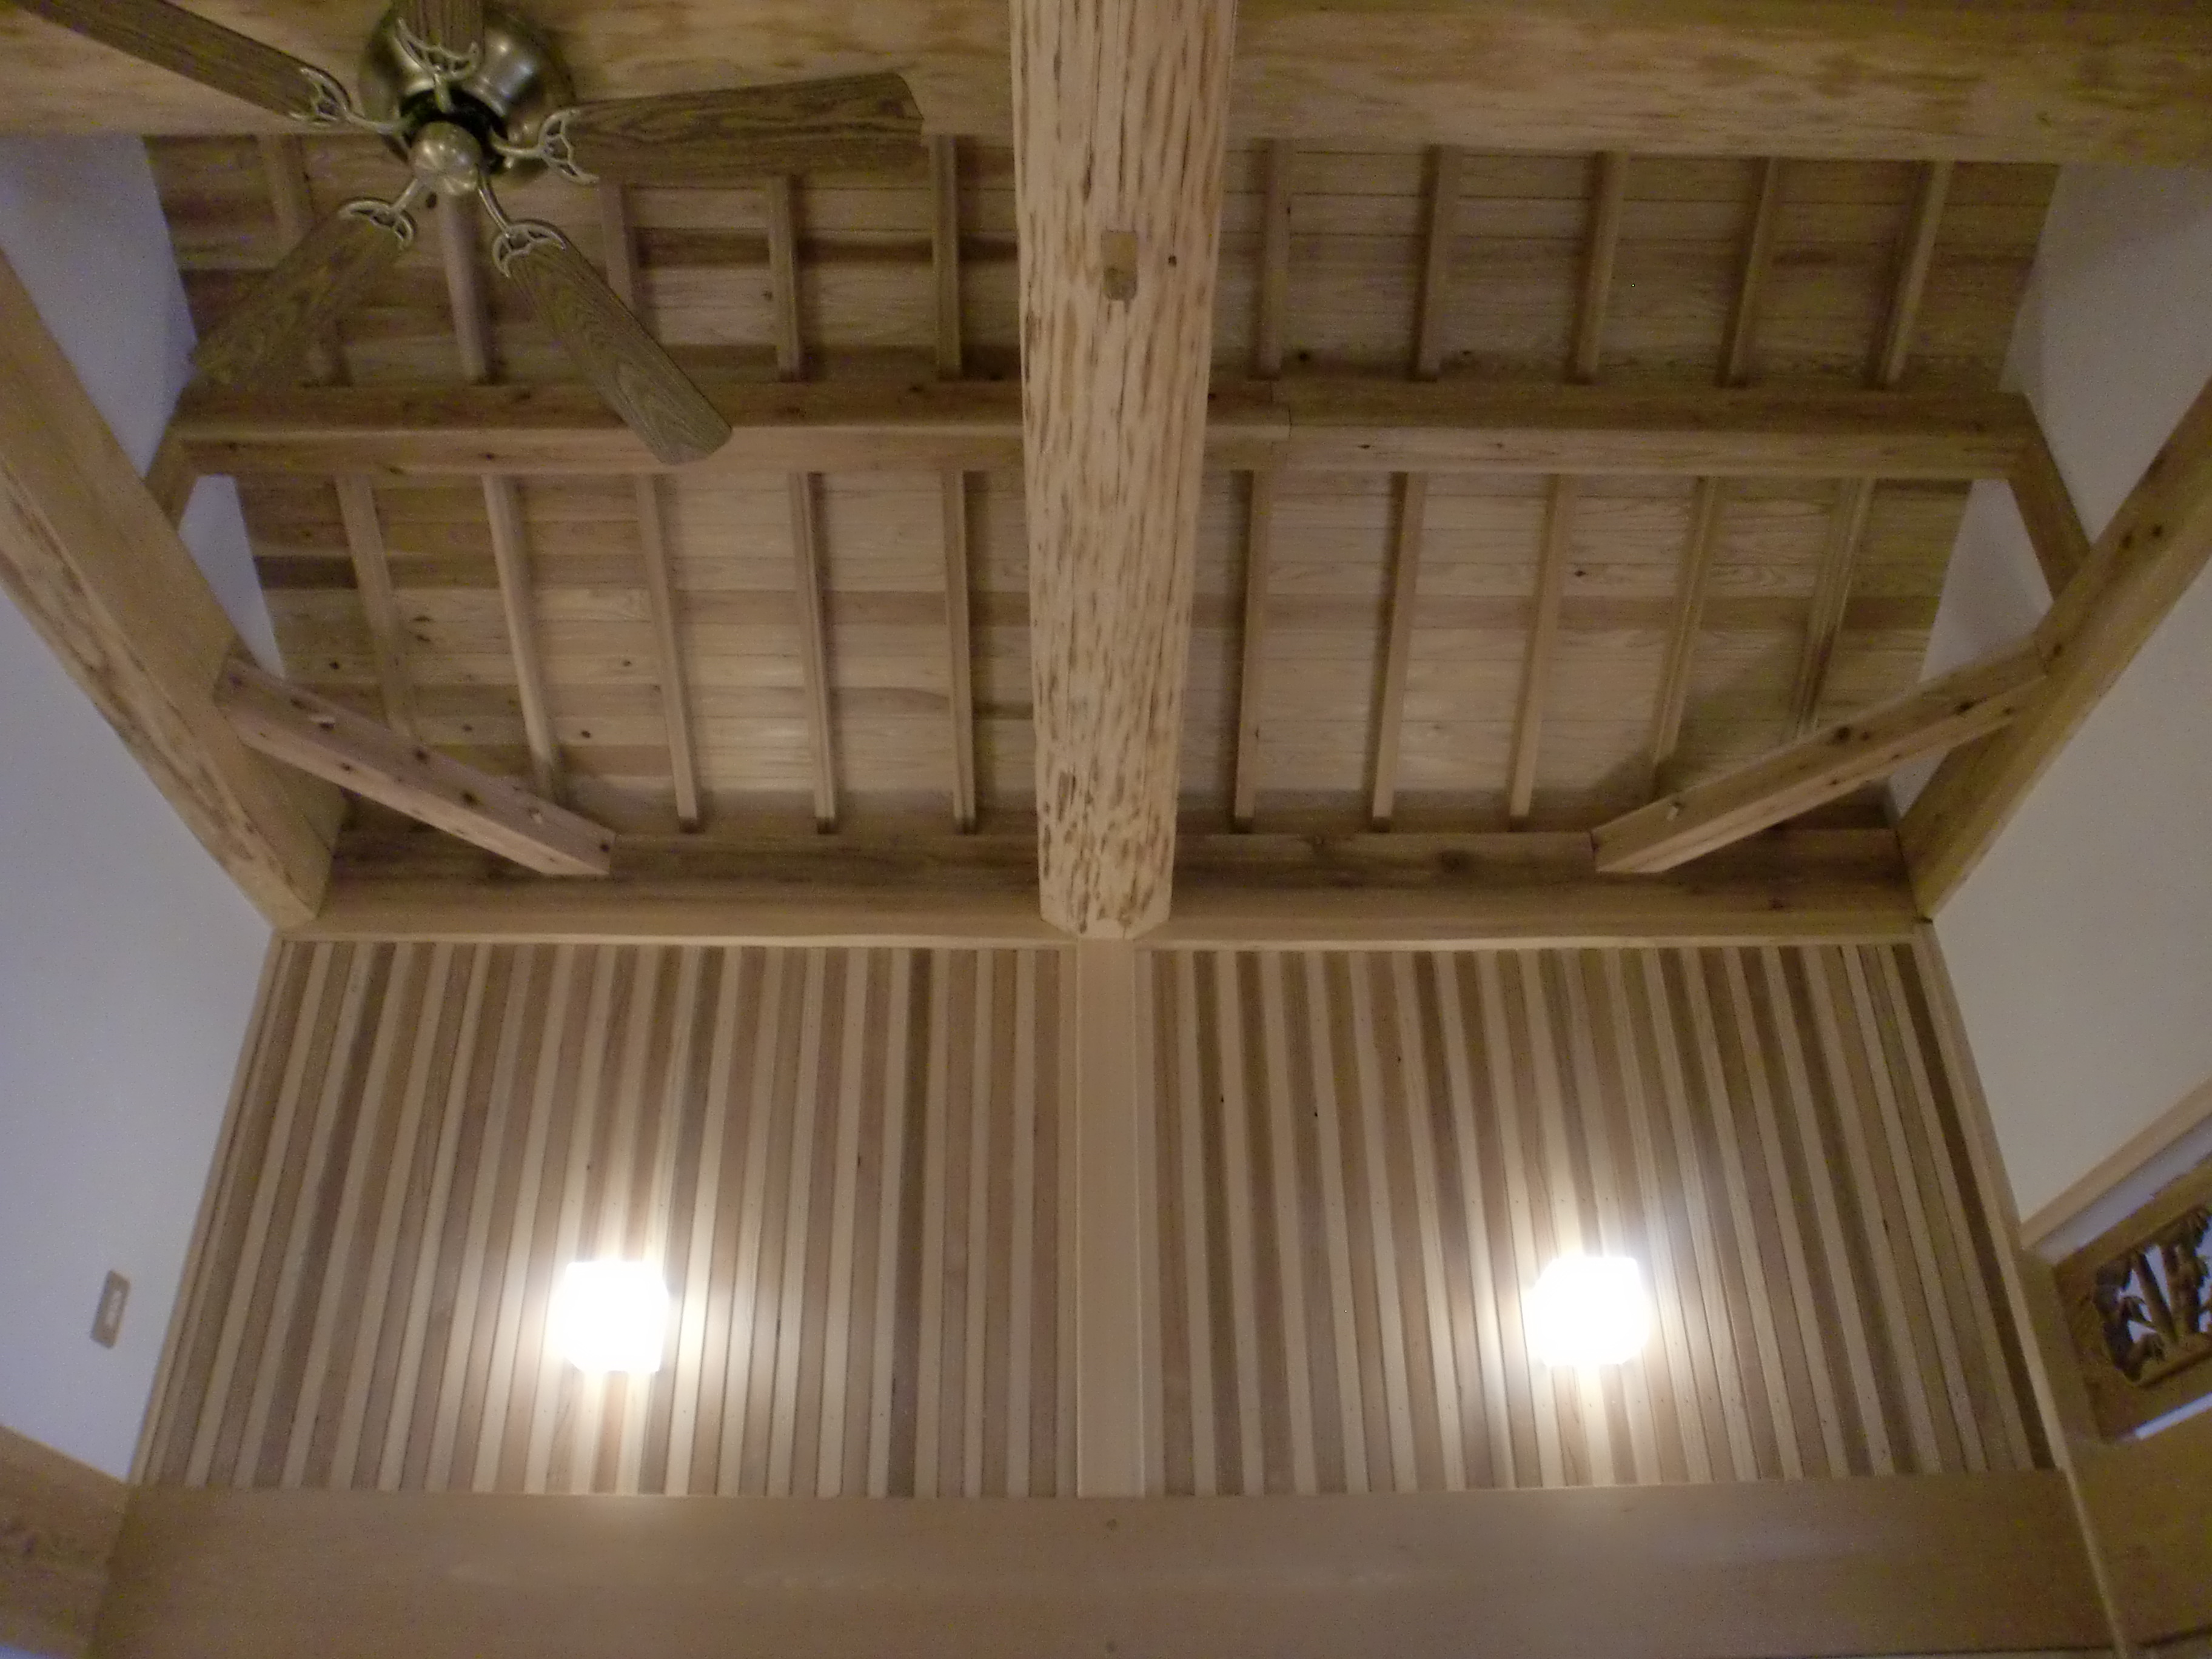 天井板を設けず小屋組を現しで建築、壁は土壁漆喰仕上げ